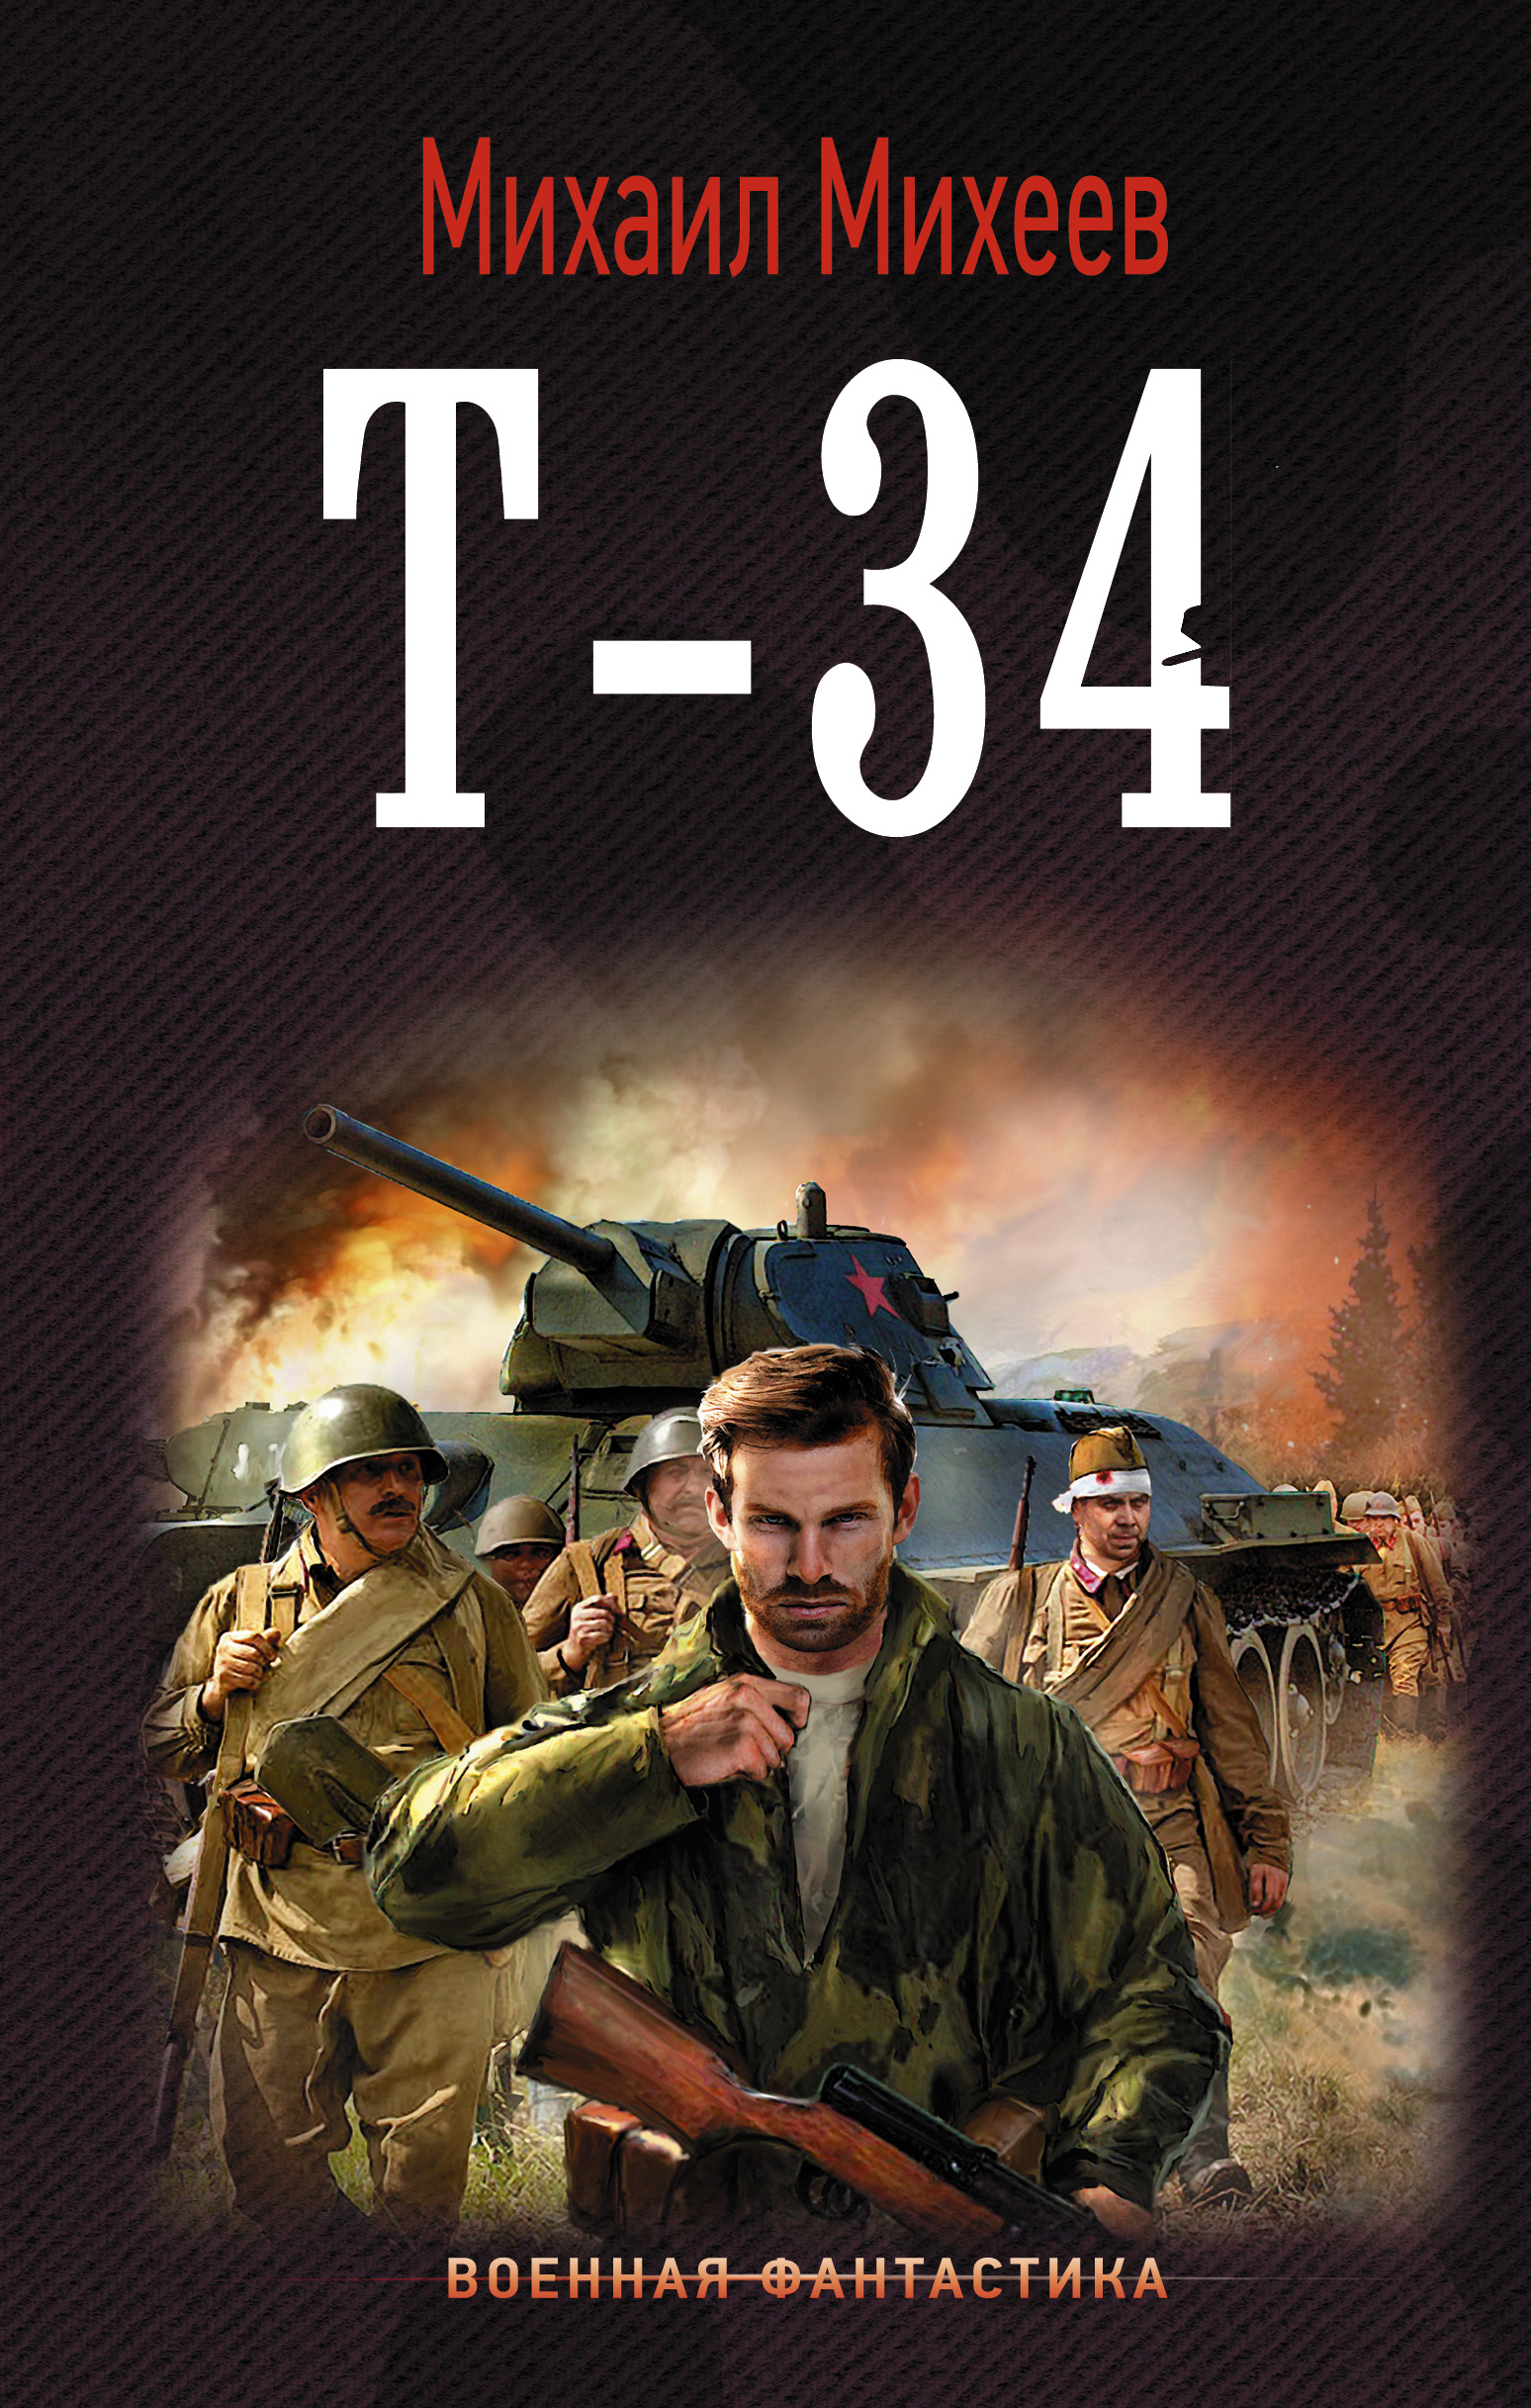 Книга Т-34 из серии Военная фантастика, созданная Михаил Михеев, может относится к жанру Попаданцы, Боевая фантастика. Стоимость электронной книги Т-34 с идентификатором 33575255 составляет 199.00 руб.